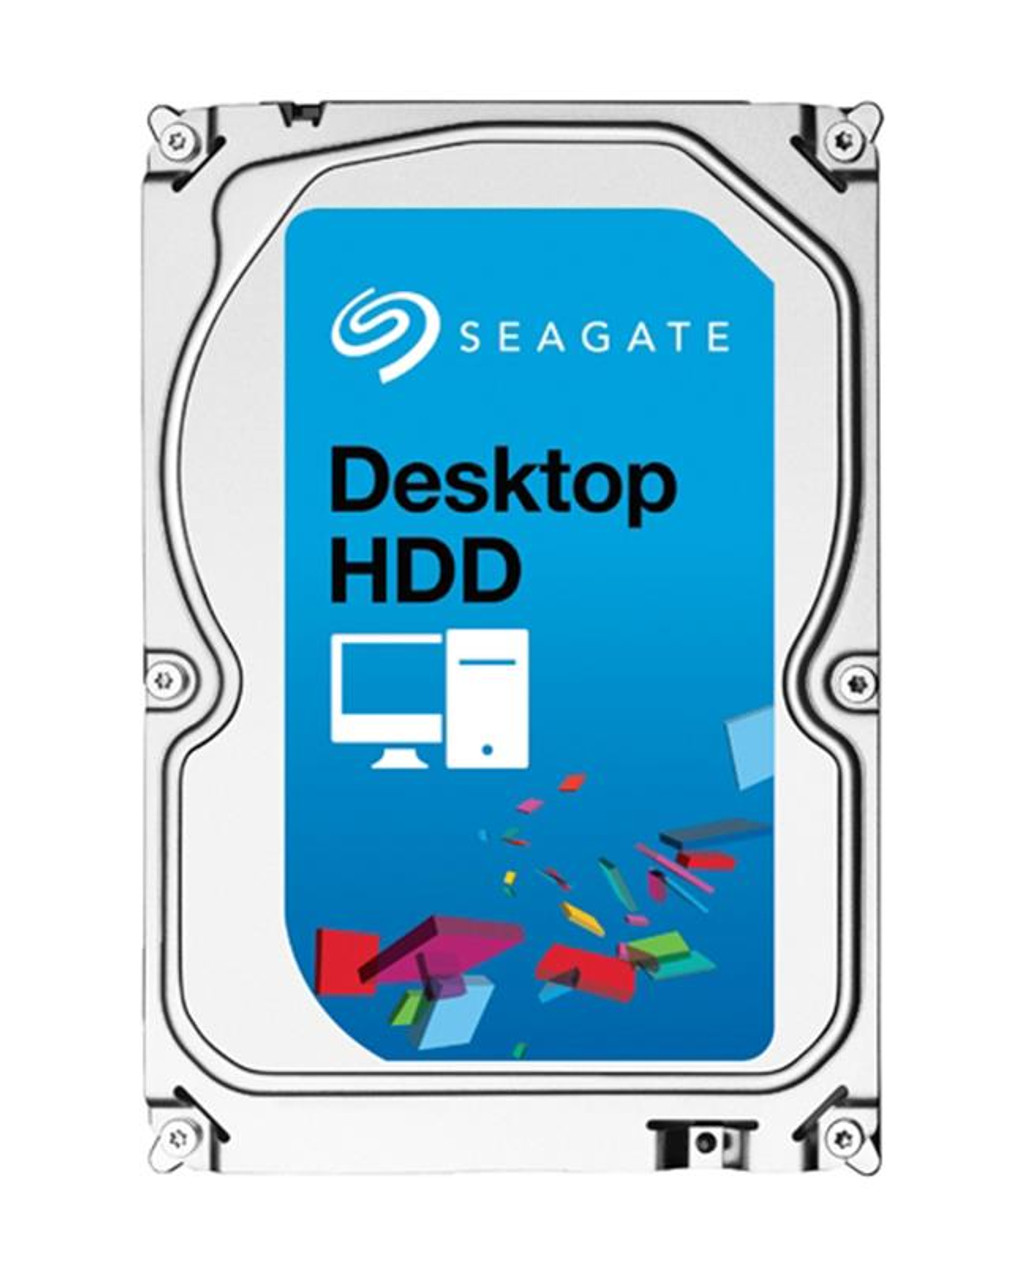 9JB1P1000 Seagate Desktop HDD.15 4TB 7200RPM SATA 6Gbps 64MB Cache 3.5-inch Internal Hard Drive